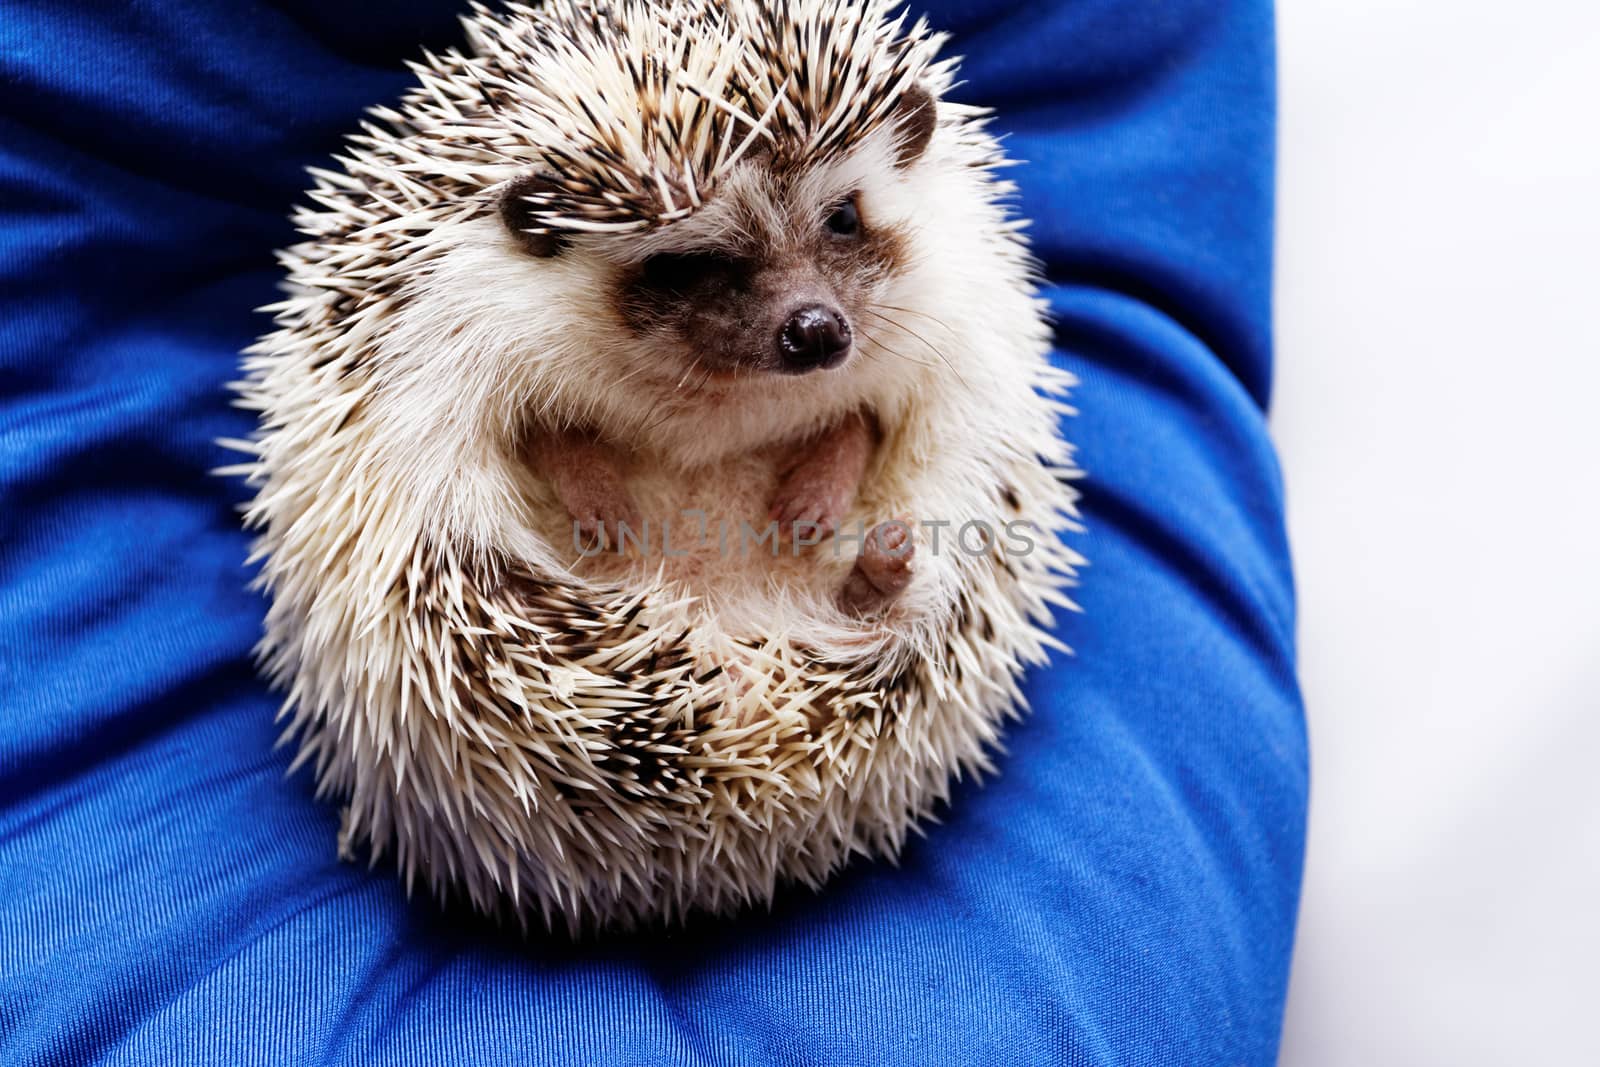 Cute hedgehog by Nneirda